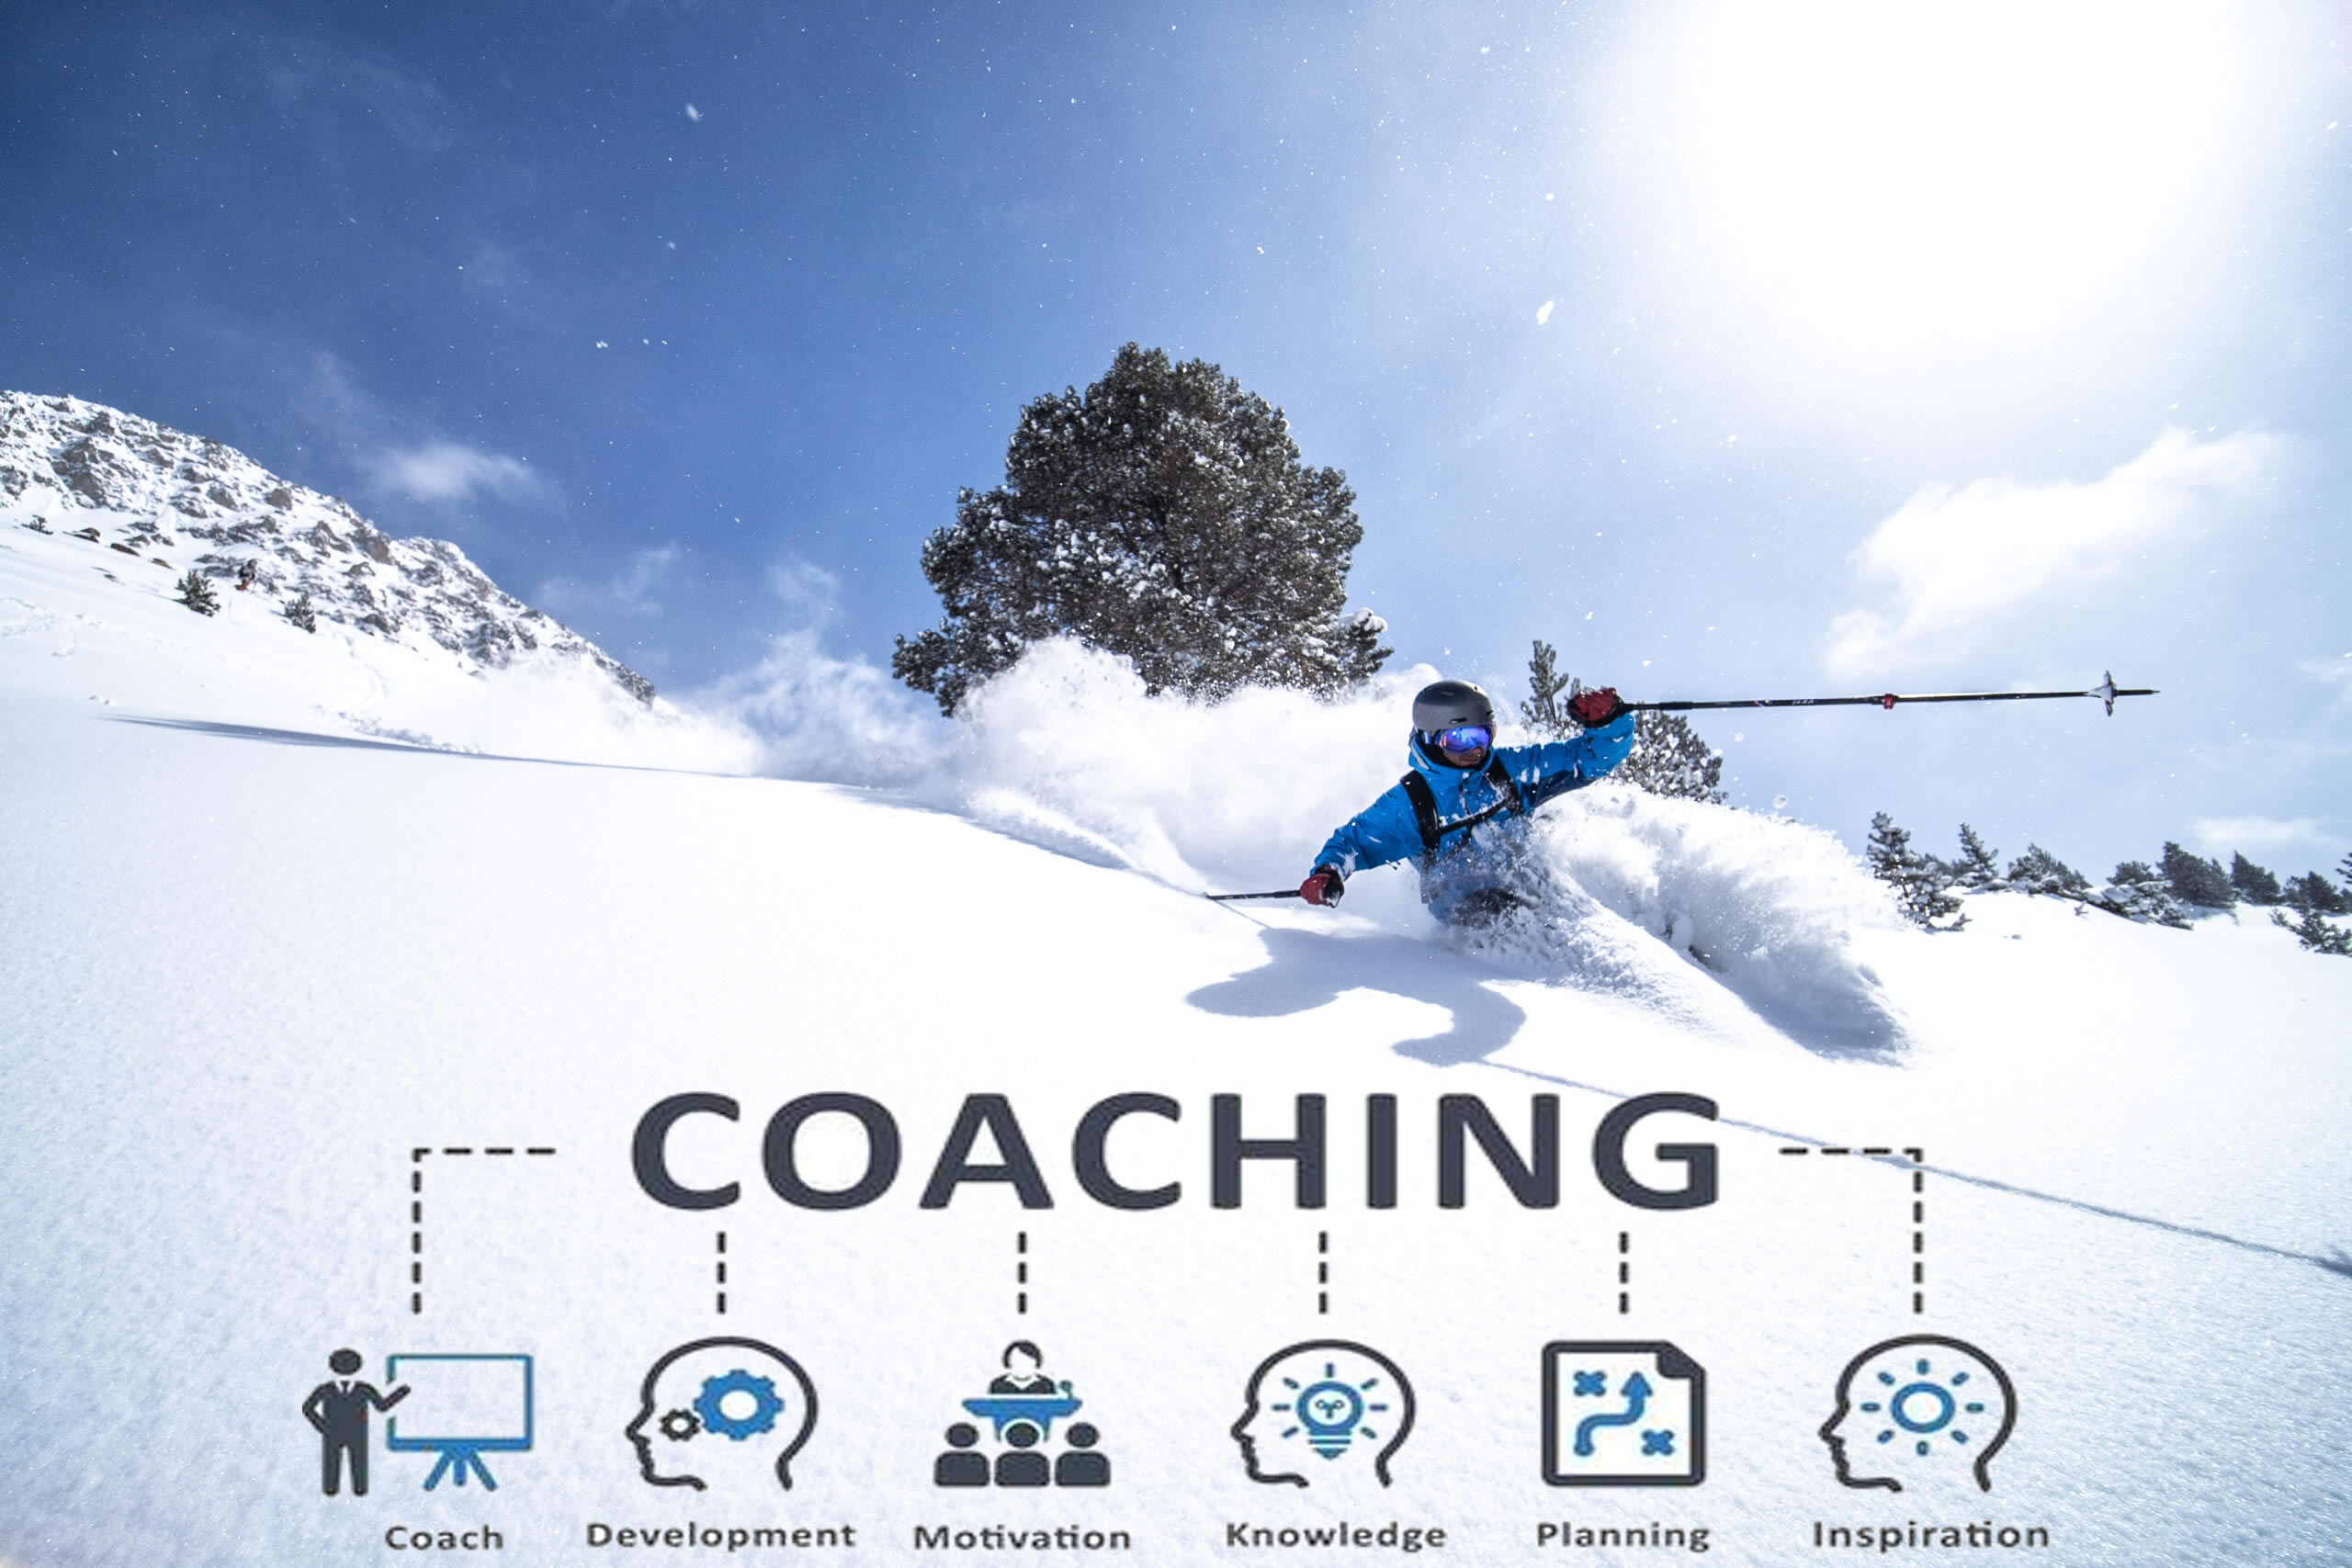 iWE, la agencia líder en turismo de experiencias. Descubre un mundo de experiencias únicas con un solo operador turístico-Andorra Coaching Ski